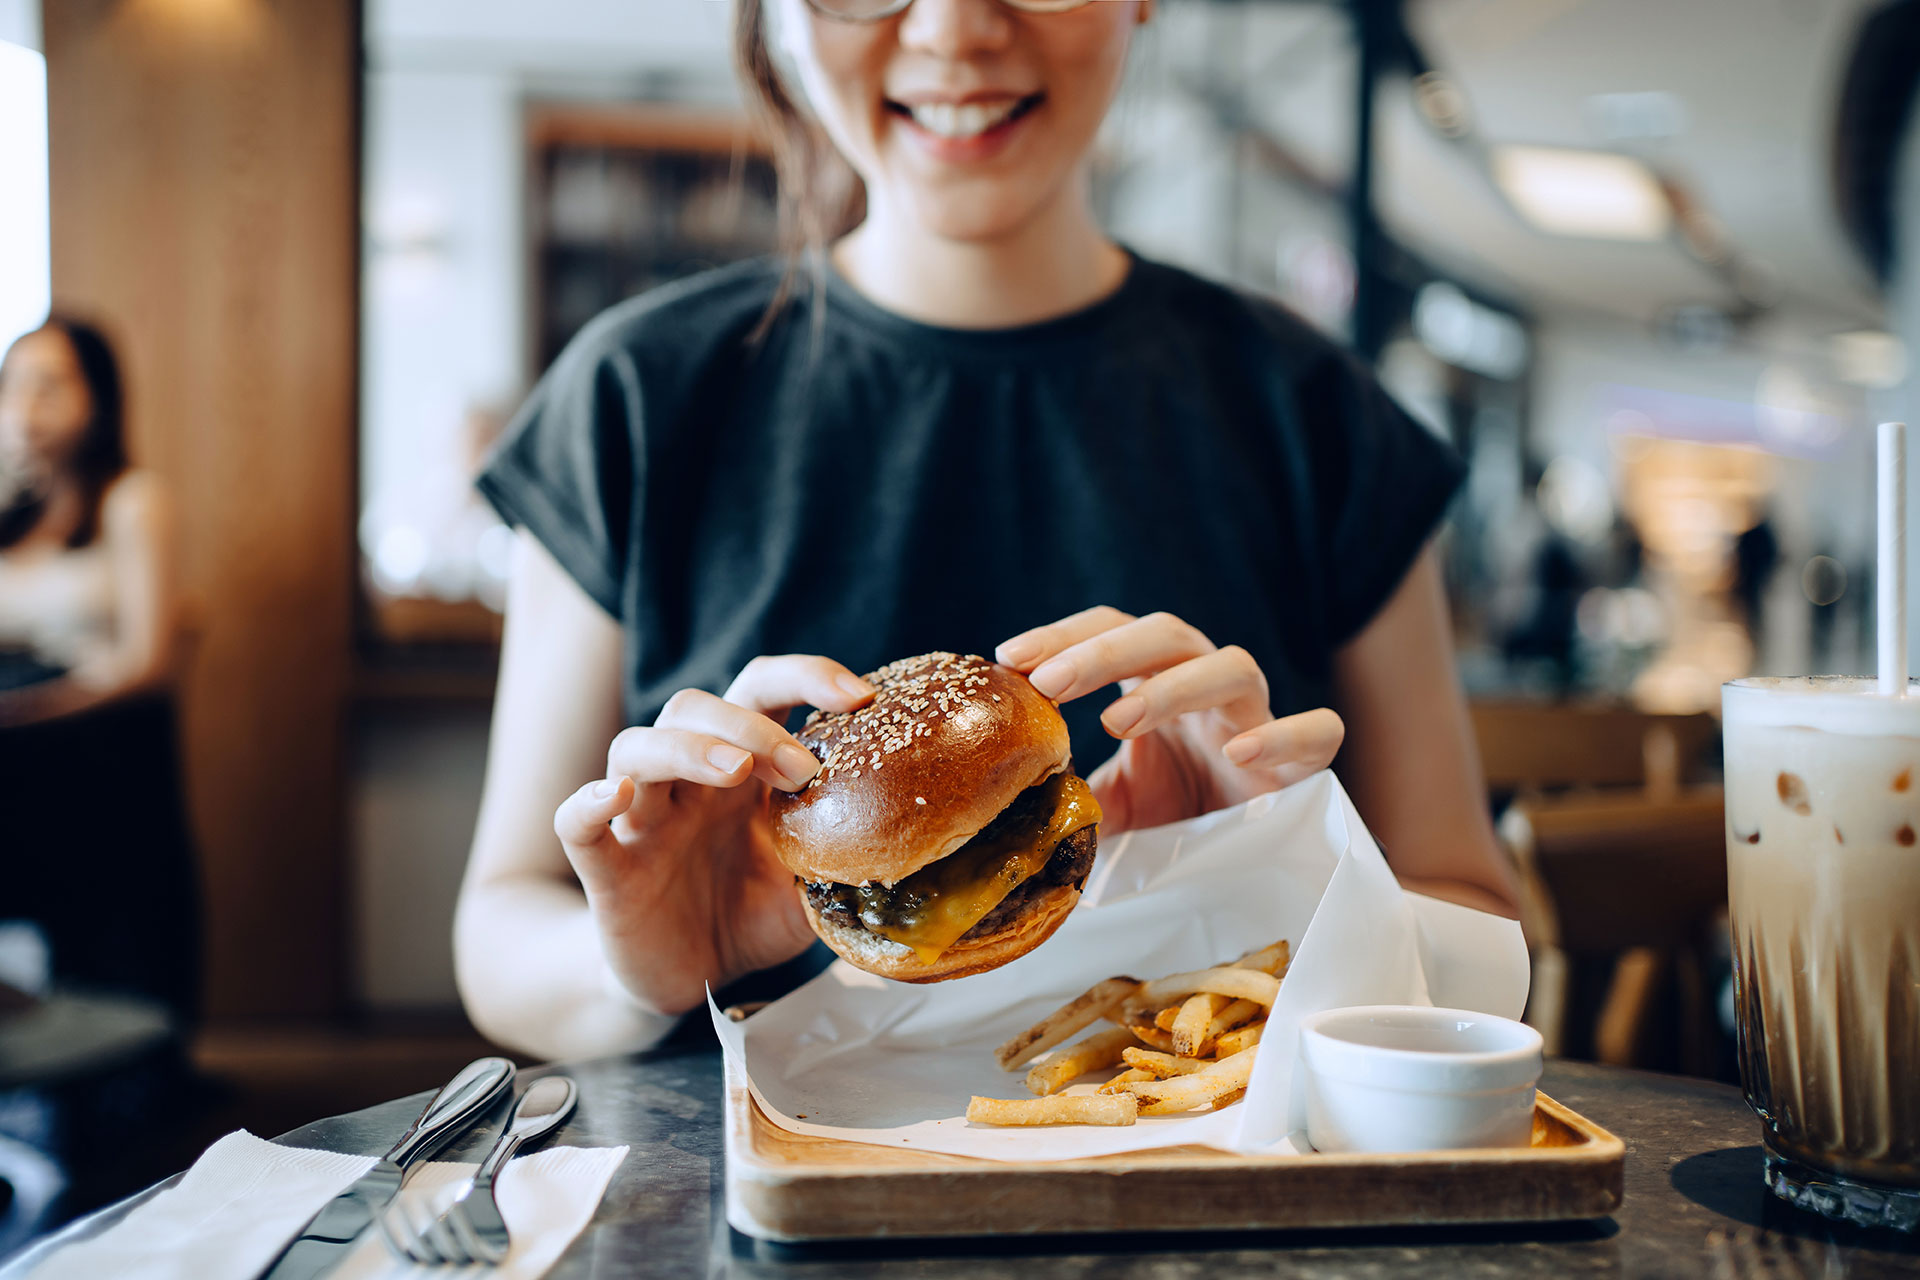 Comer tarde aumenta el riesgo de obesidad. (Getty Images)